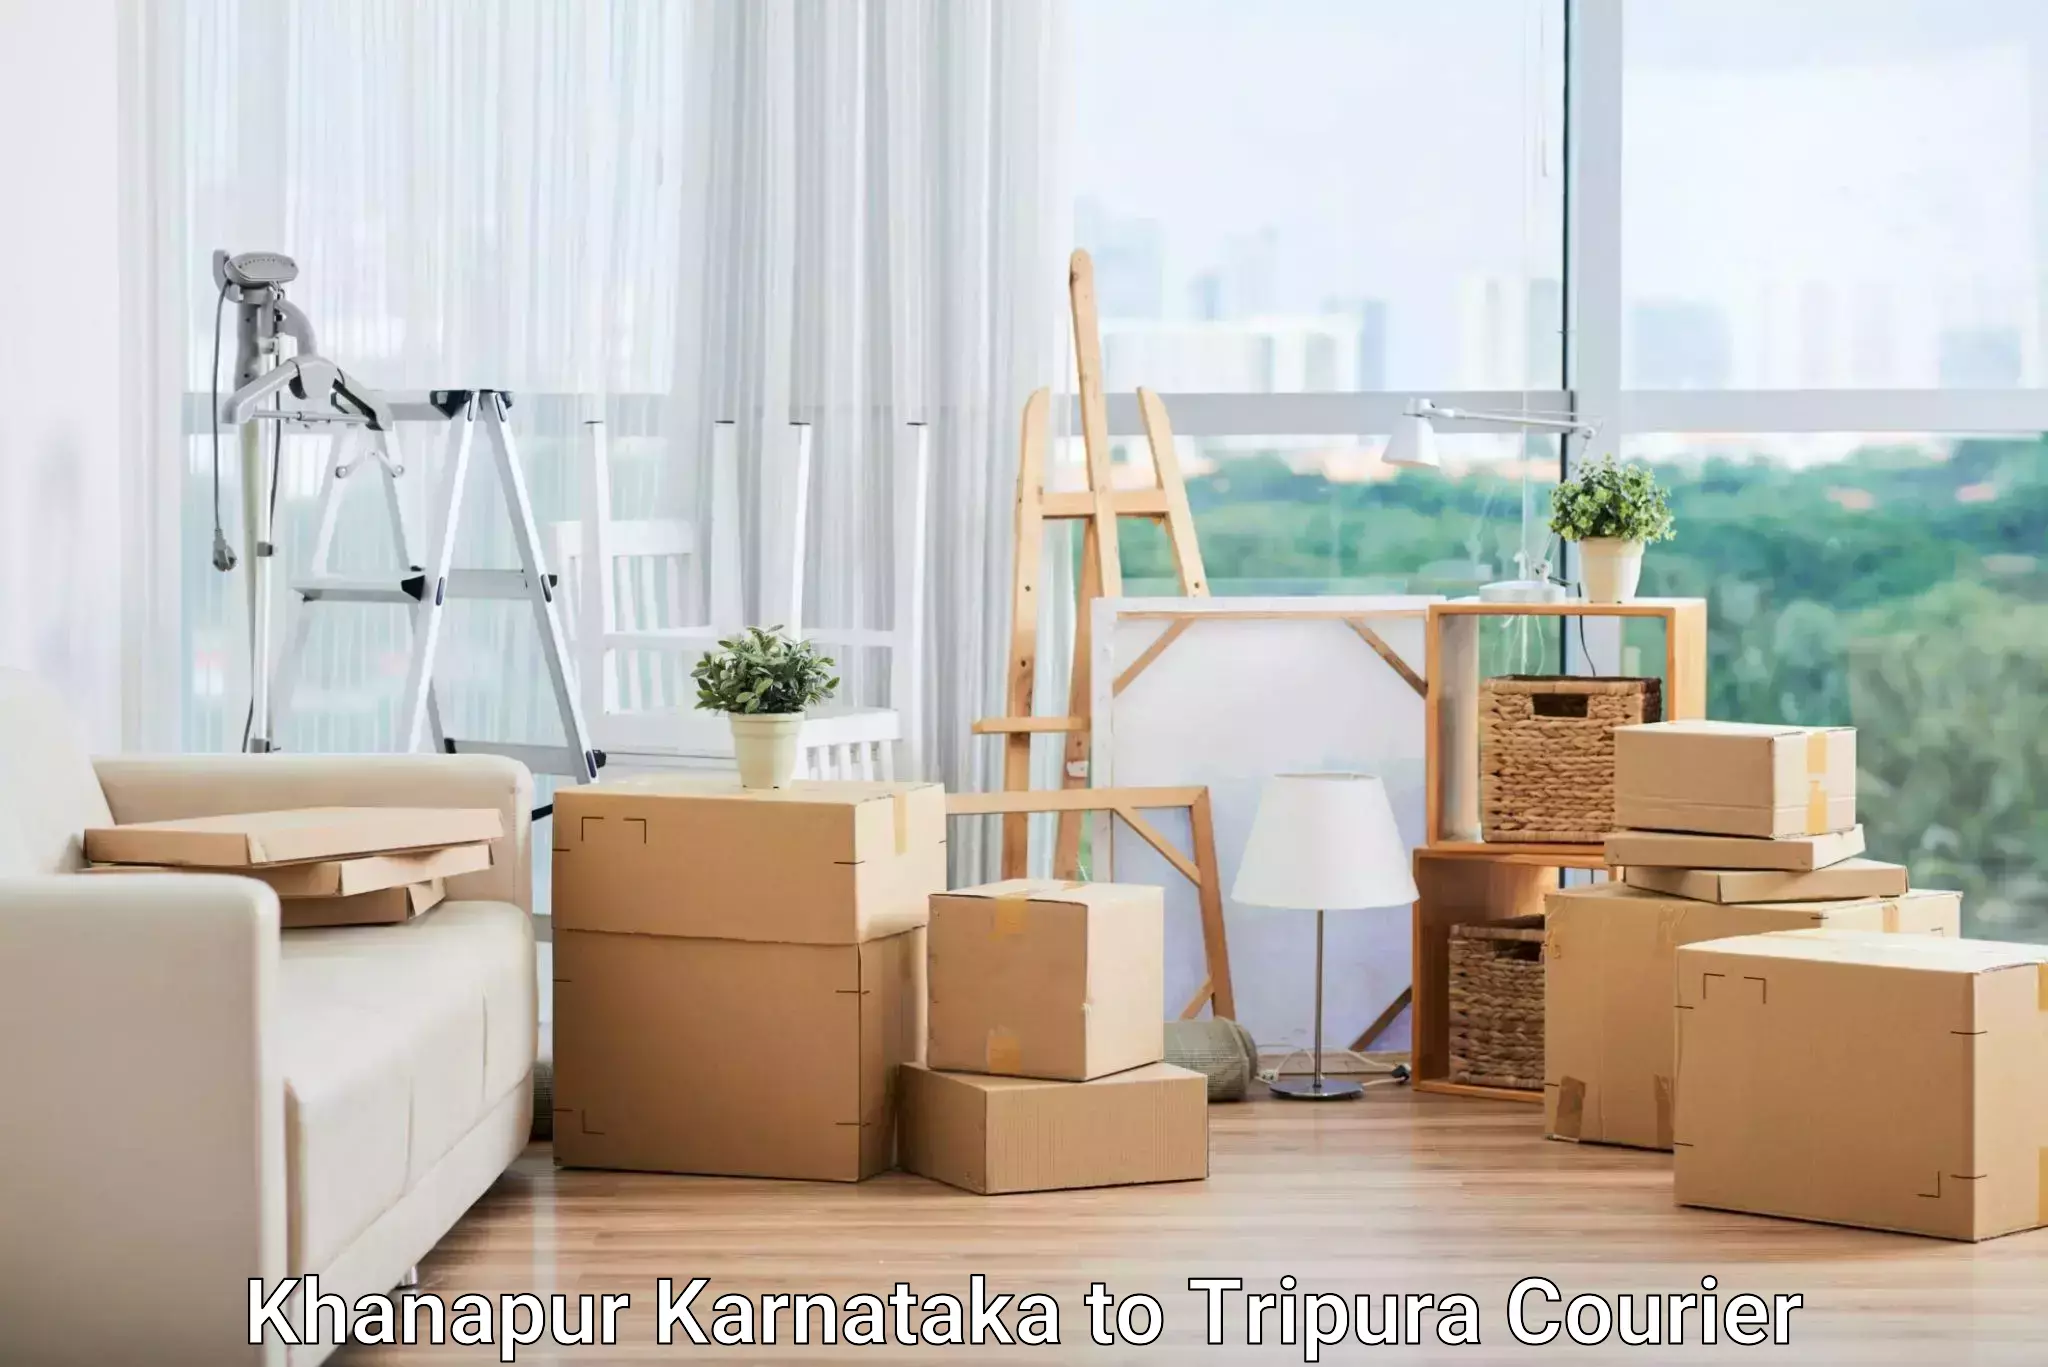 High-capacity parcel service Khanapur Karnataka to Kailashahar